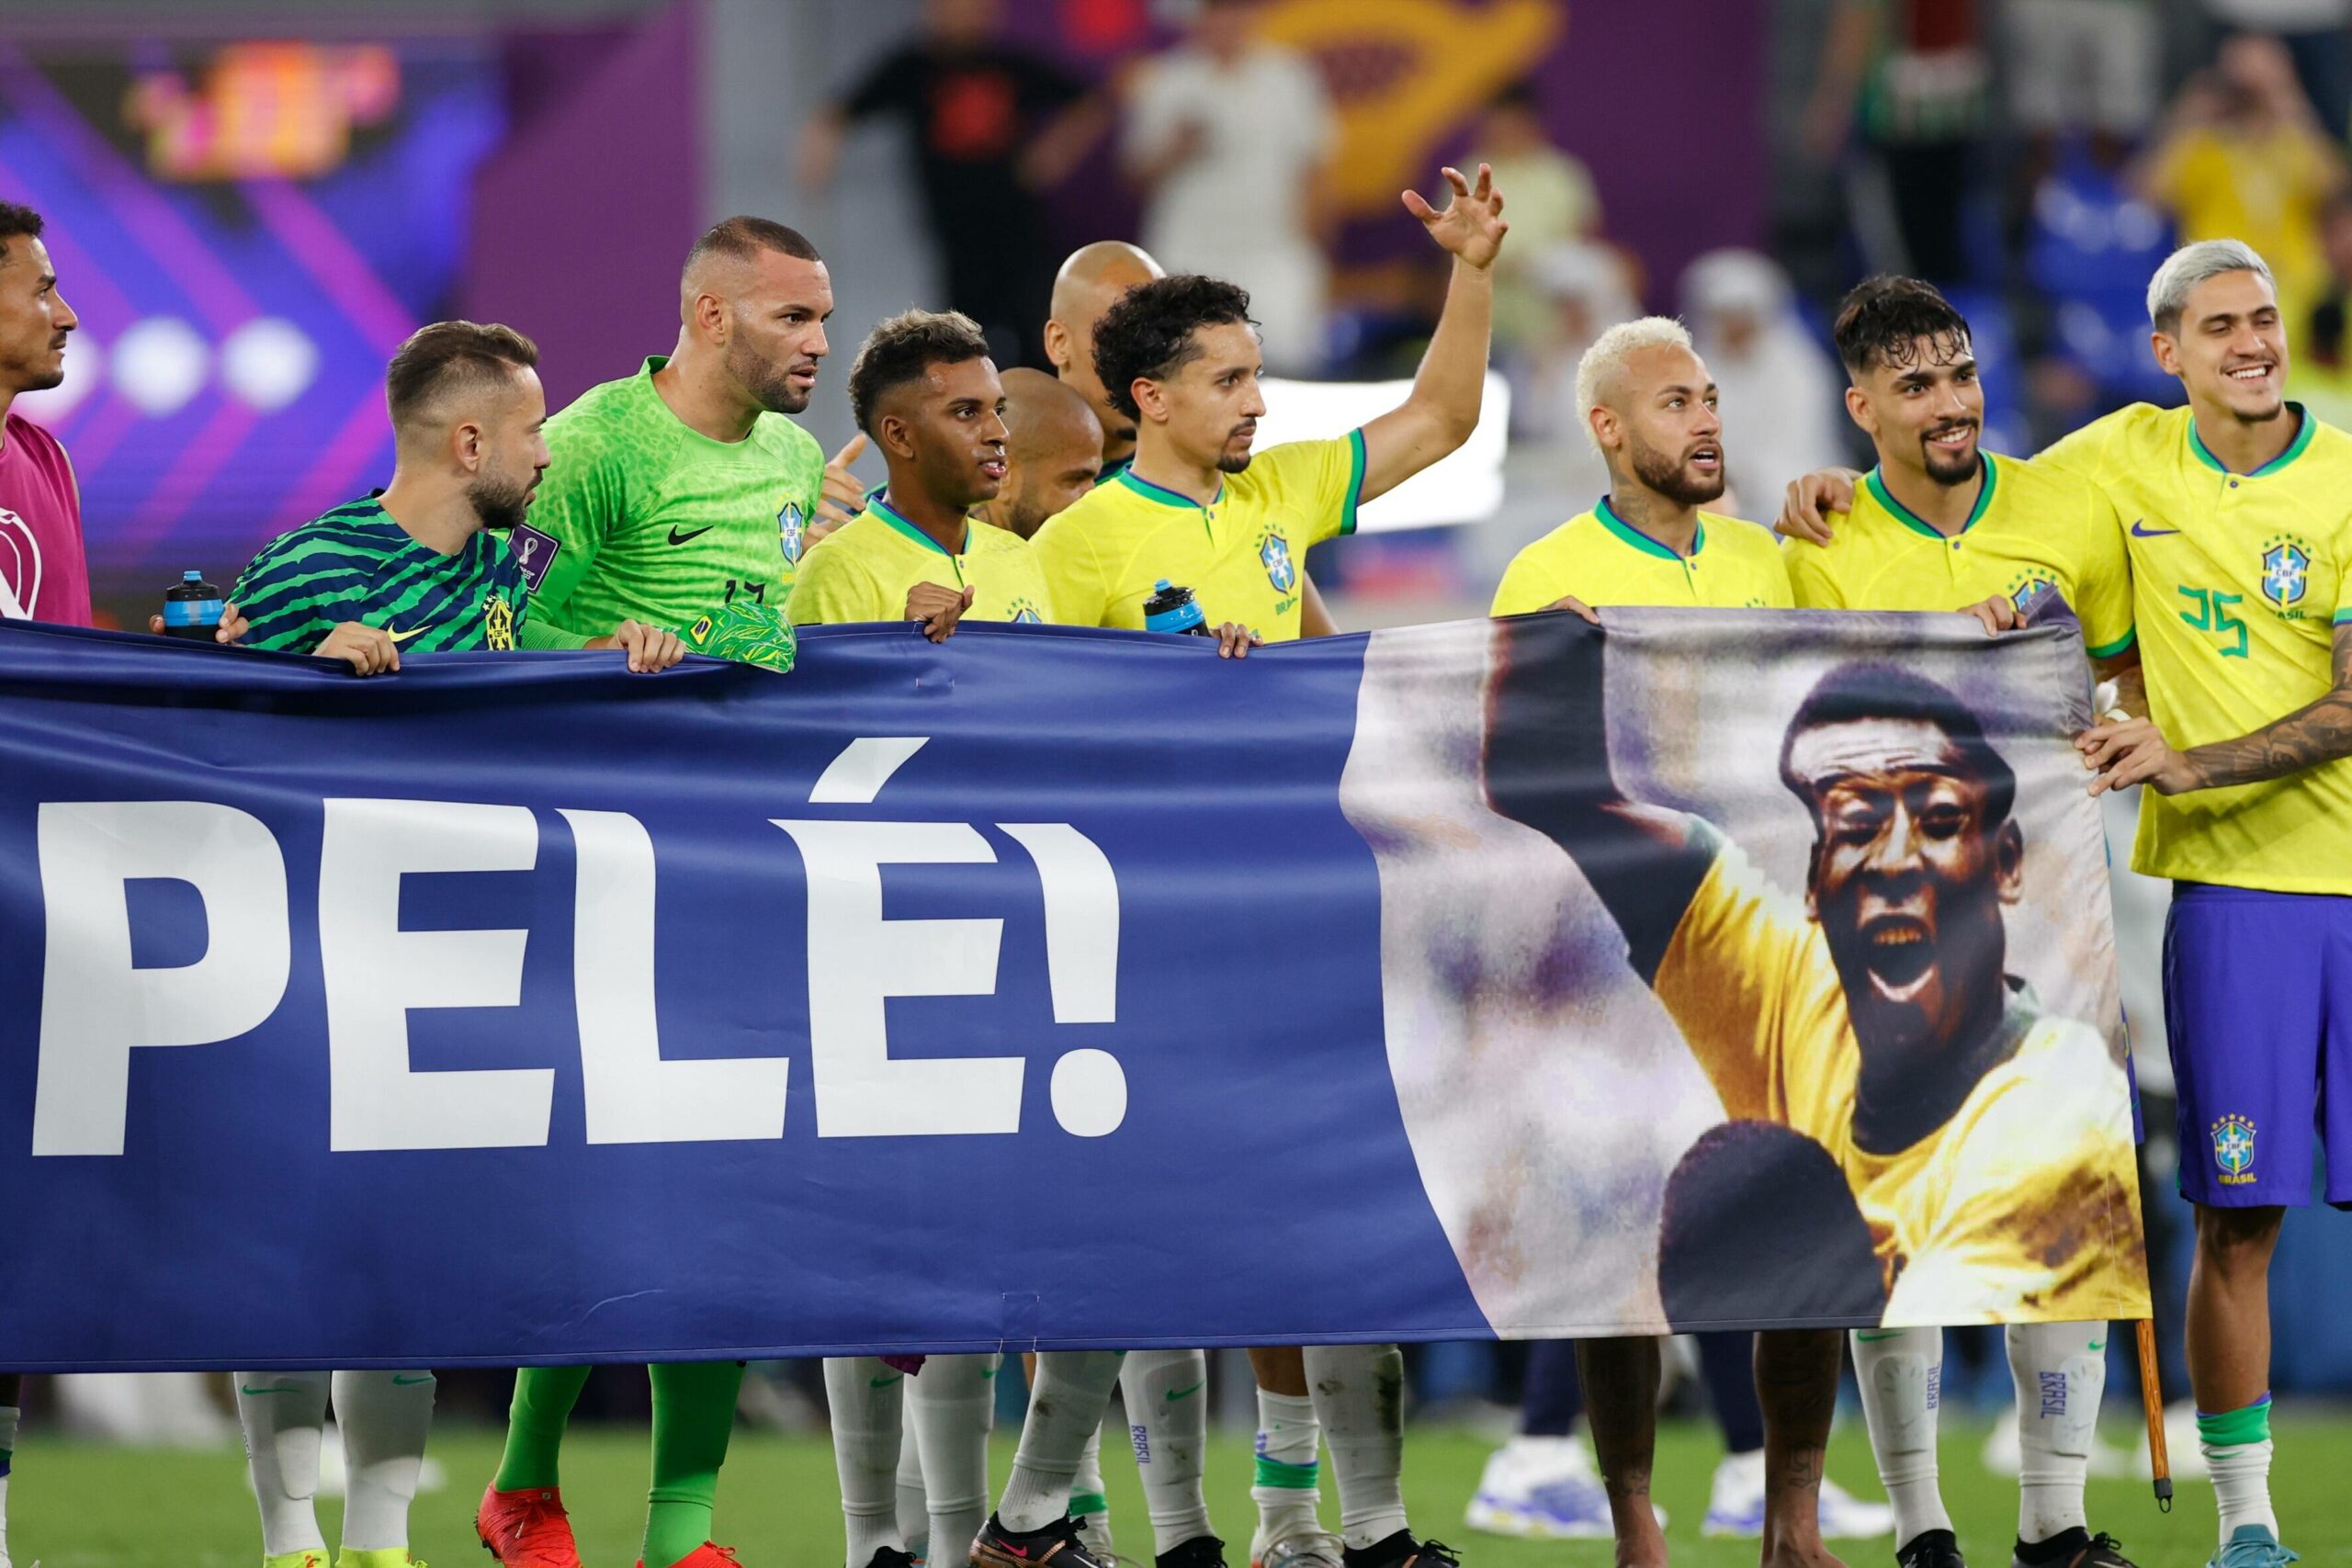 Brasiliens Spieler mit einem Plakat für Pelé